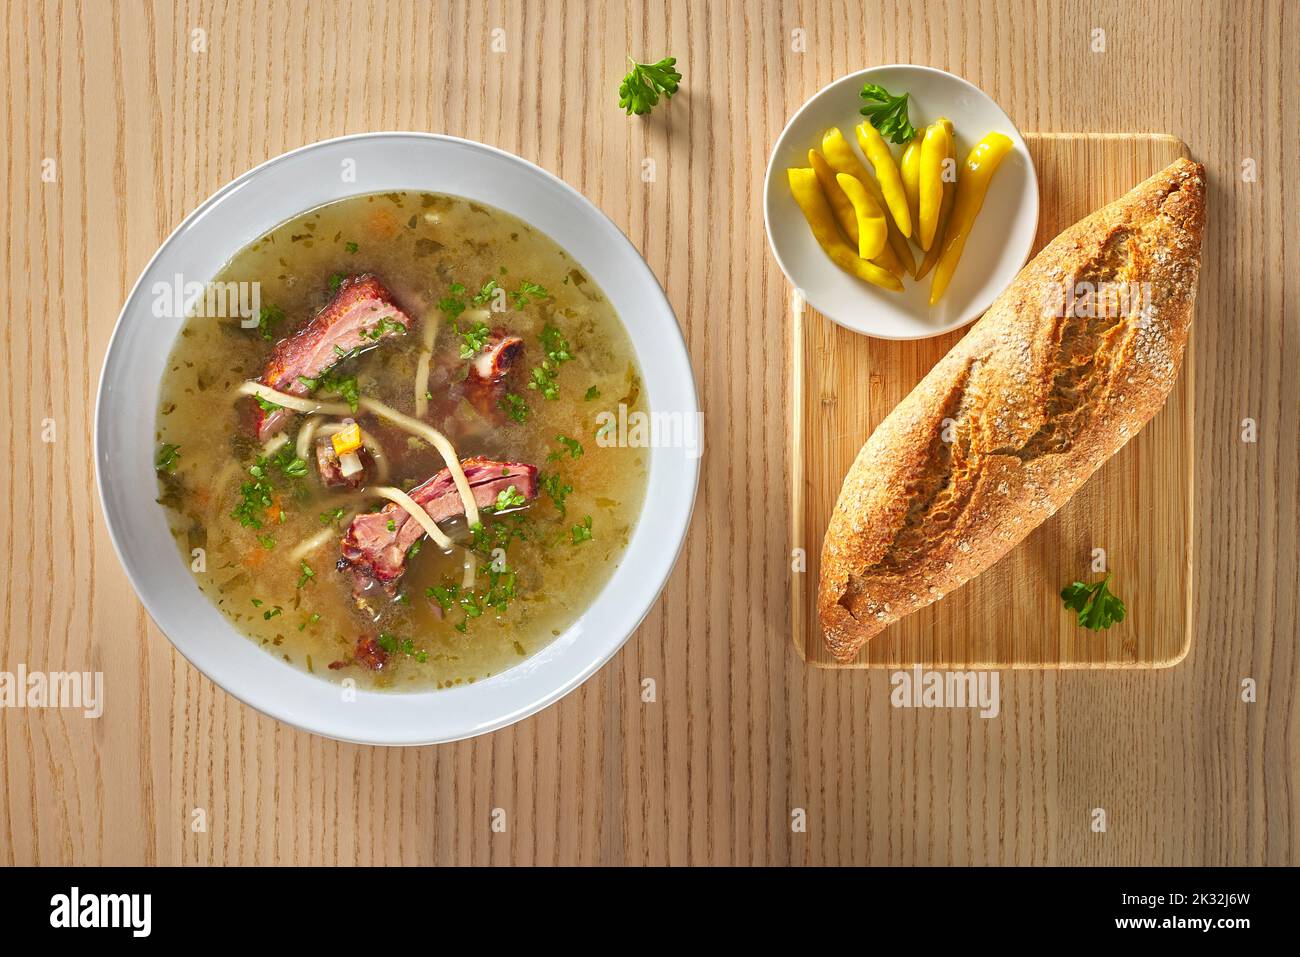 Suppe aus geräucherten Rippchen mit Gemüse, Brot, eingelegten Chilischoten und Kräutern in einer weißen Schüssel, die auf Holzboden steht Stockfoto